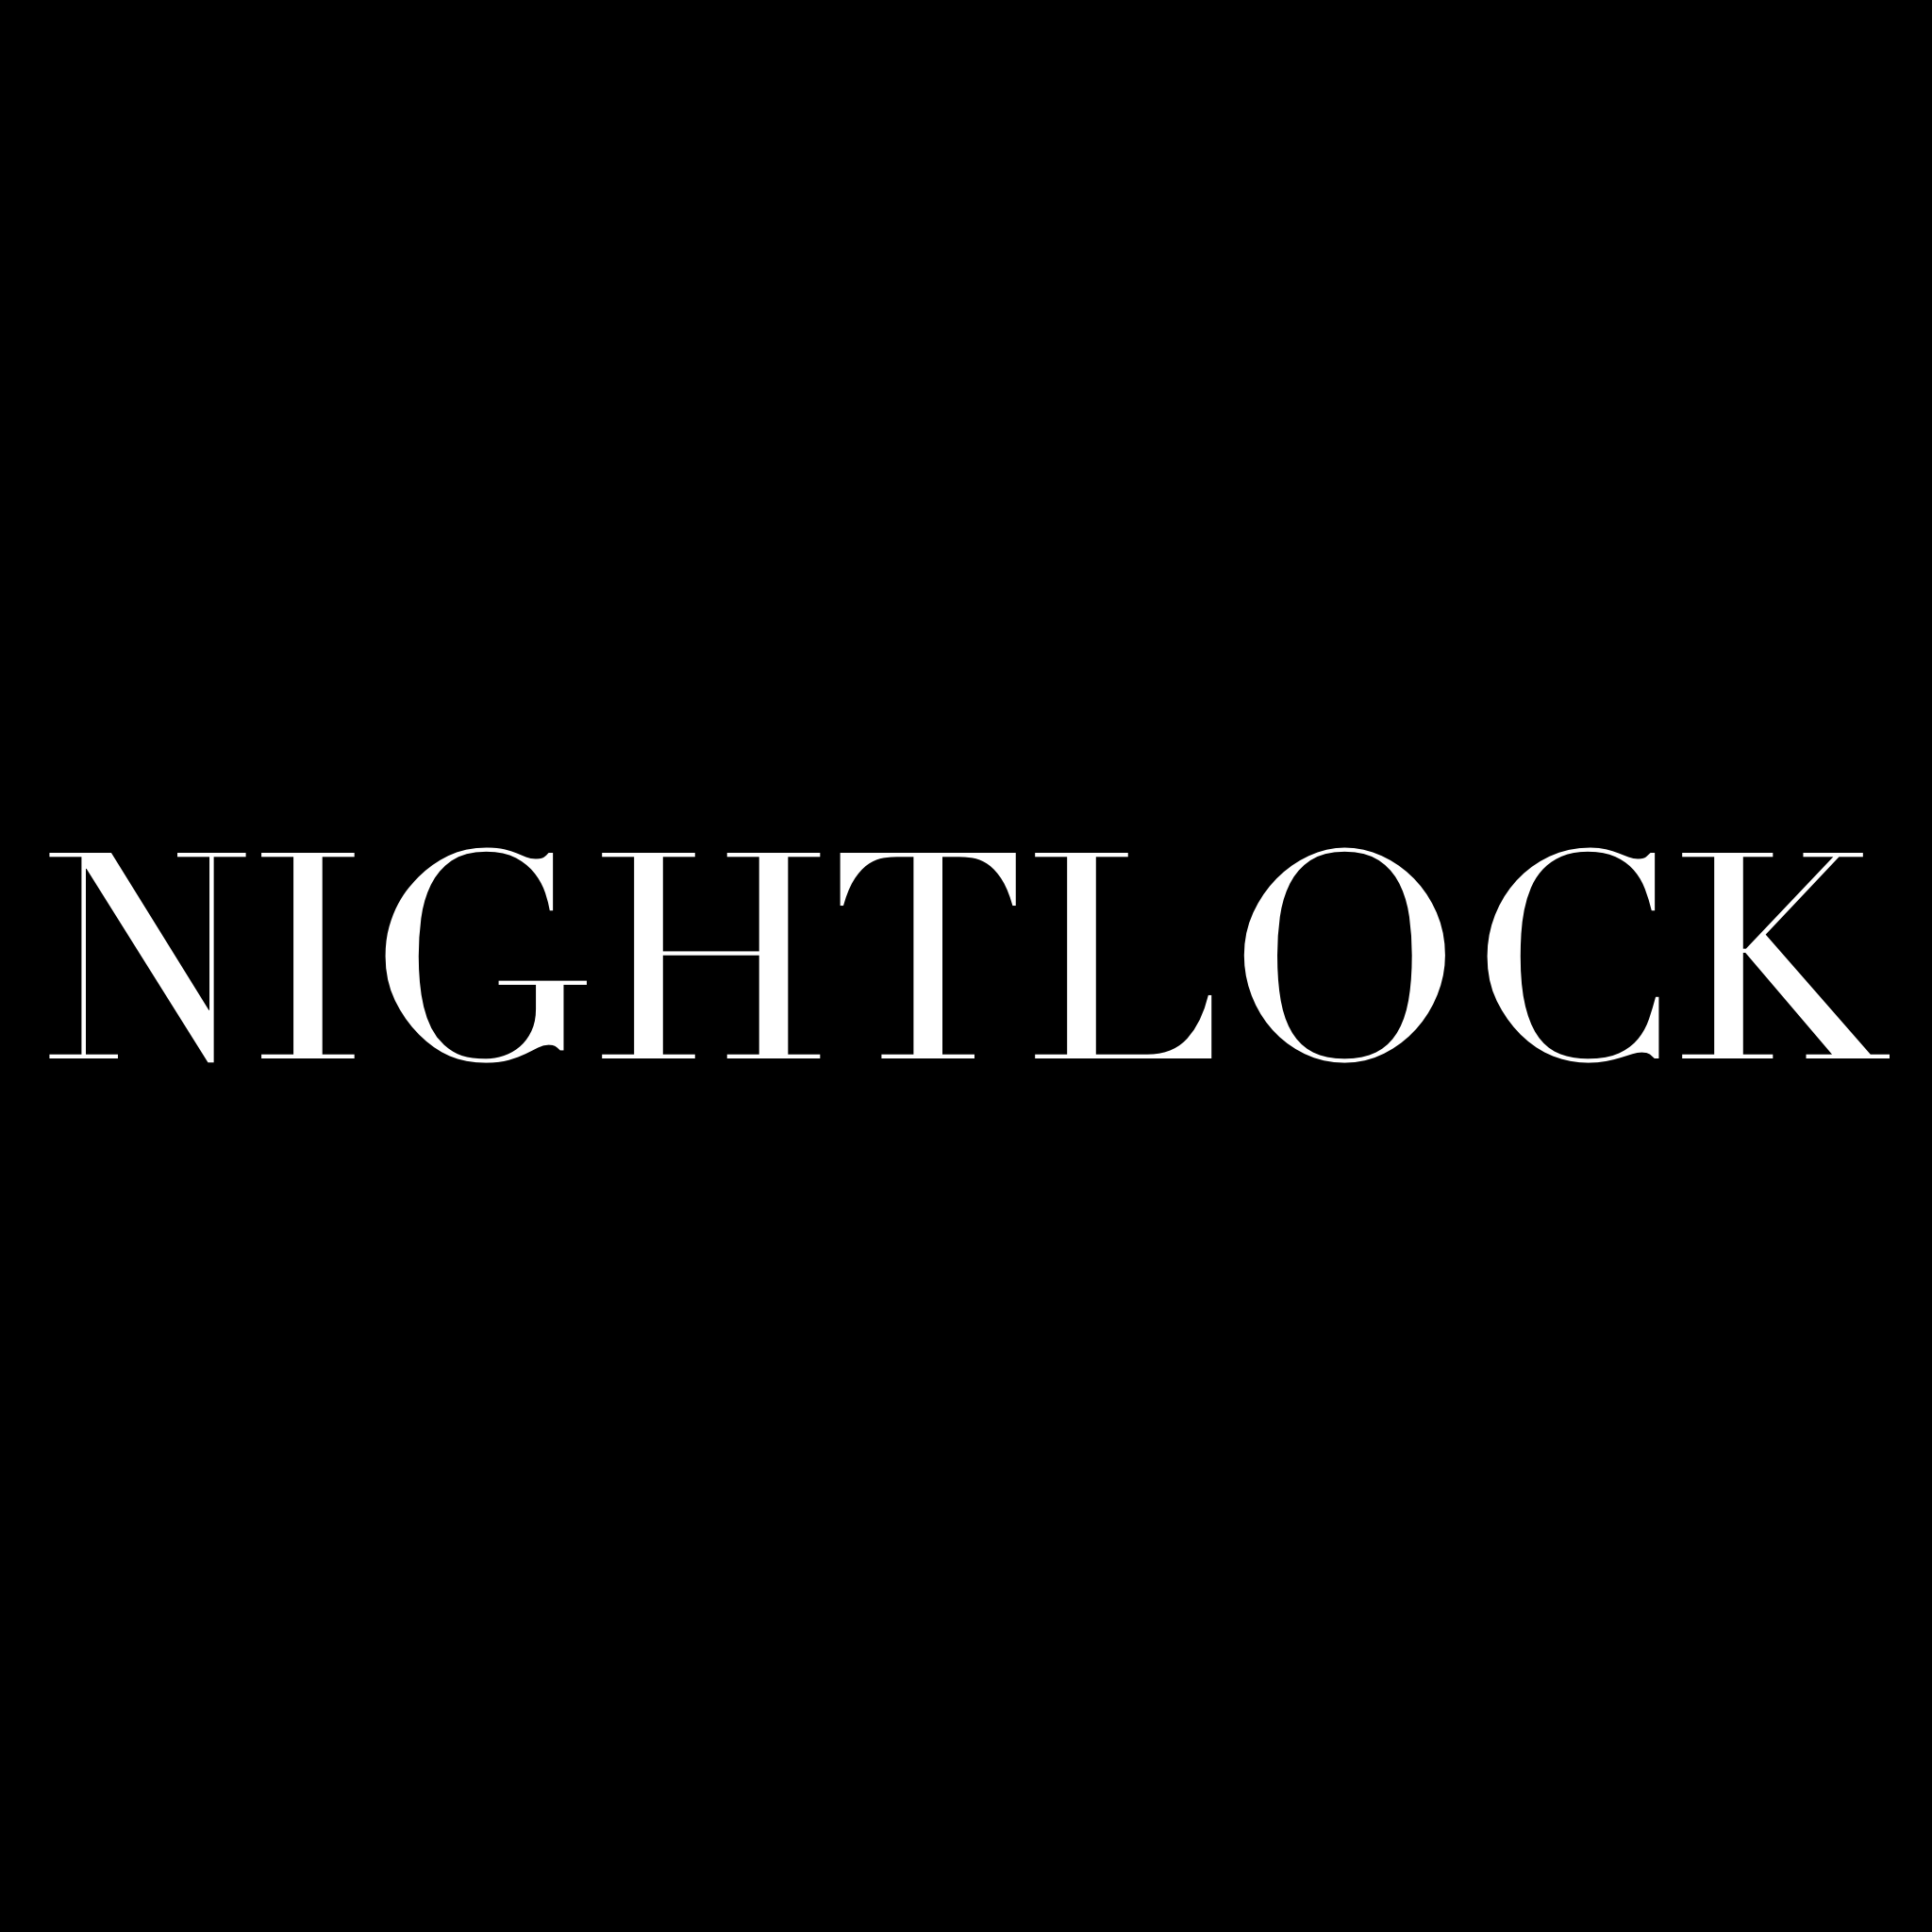 Nightlock